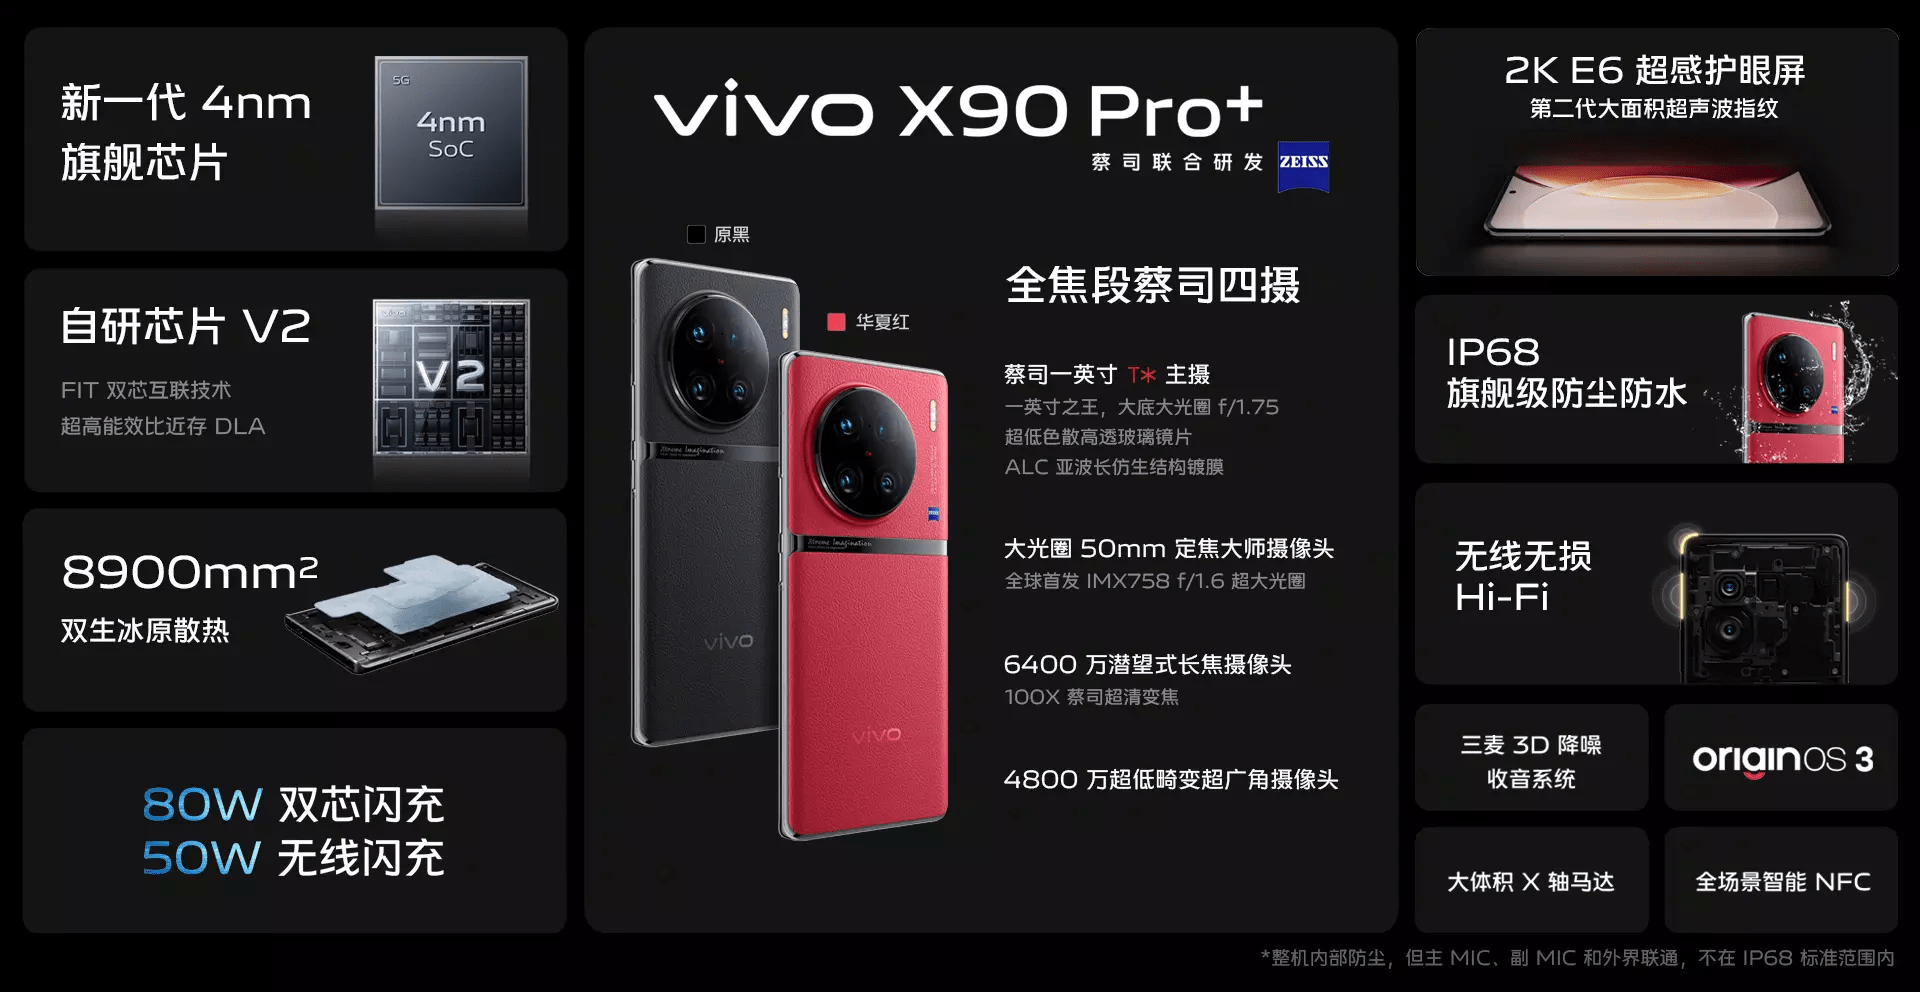 提高华为手机游戏性能
:散热远超专业游戏手机！出色温控解除vivo X90 Pro+性能枷锁